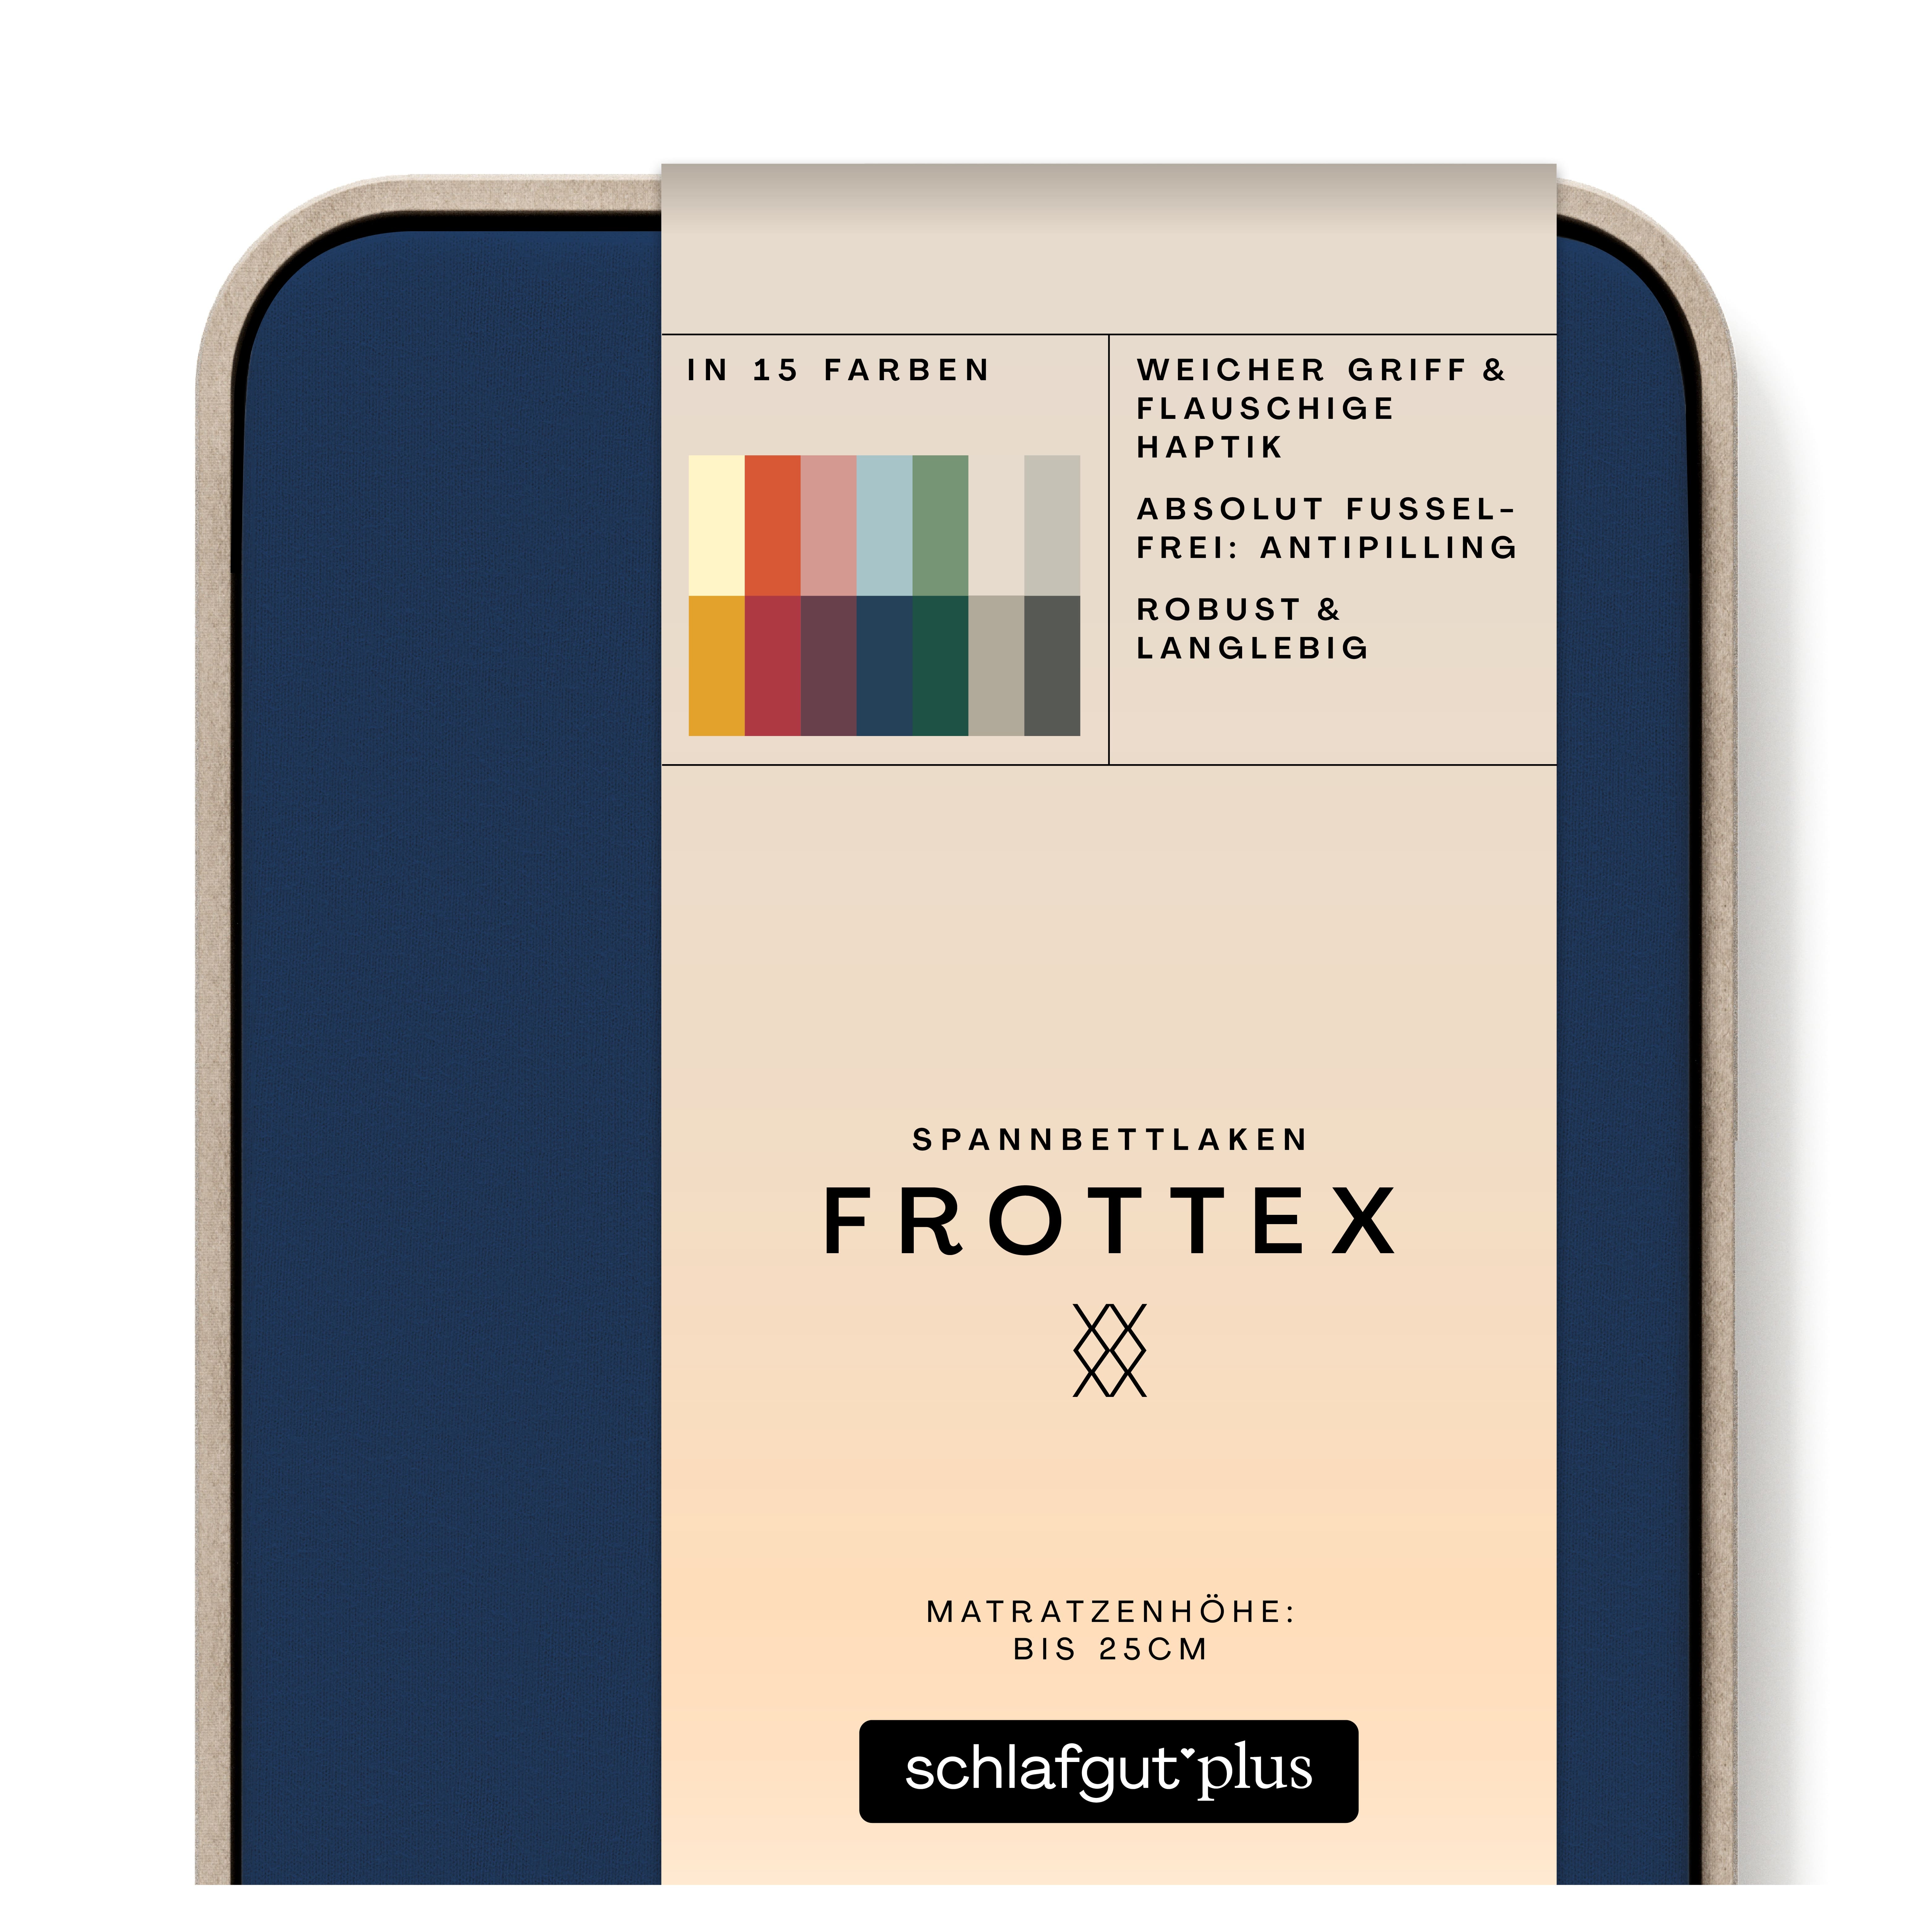 Das Produktbild vom Spannbettlaken der Reihe Frottex in Farbe blue deep von Schlafgut